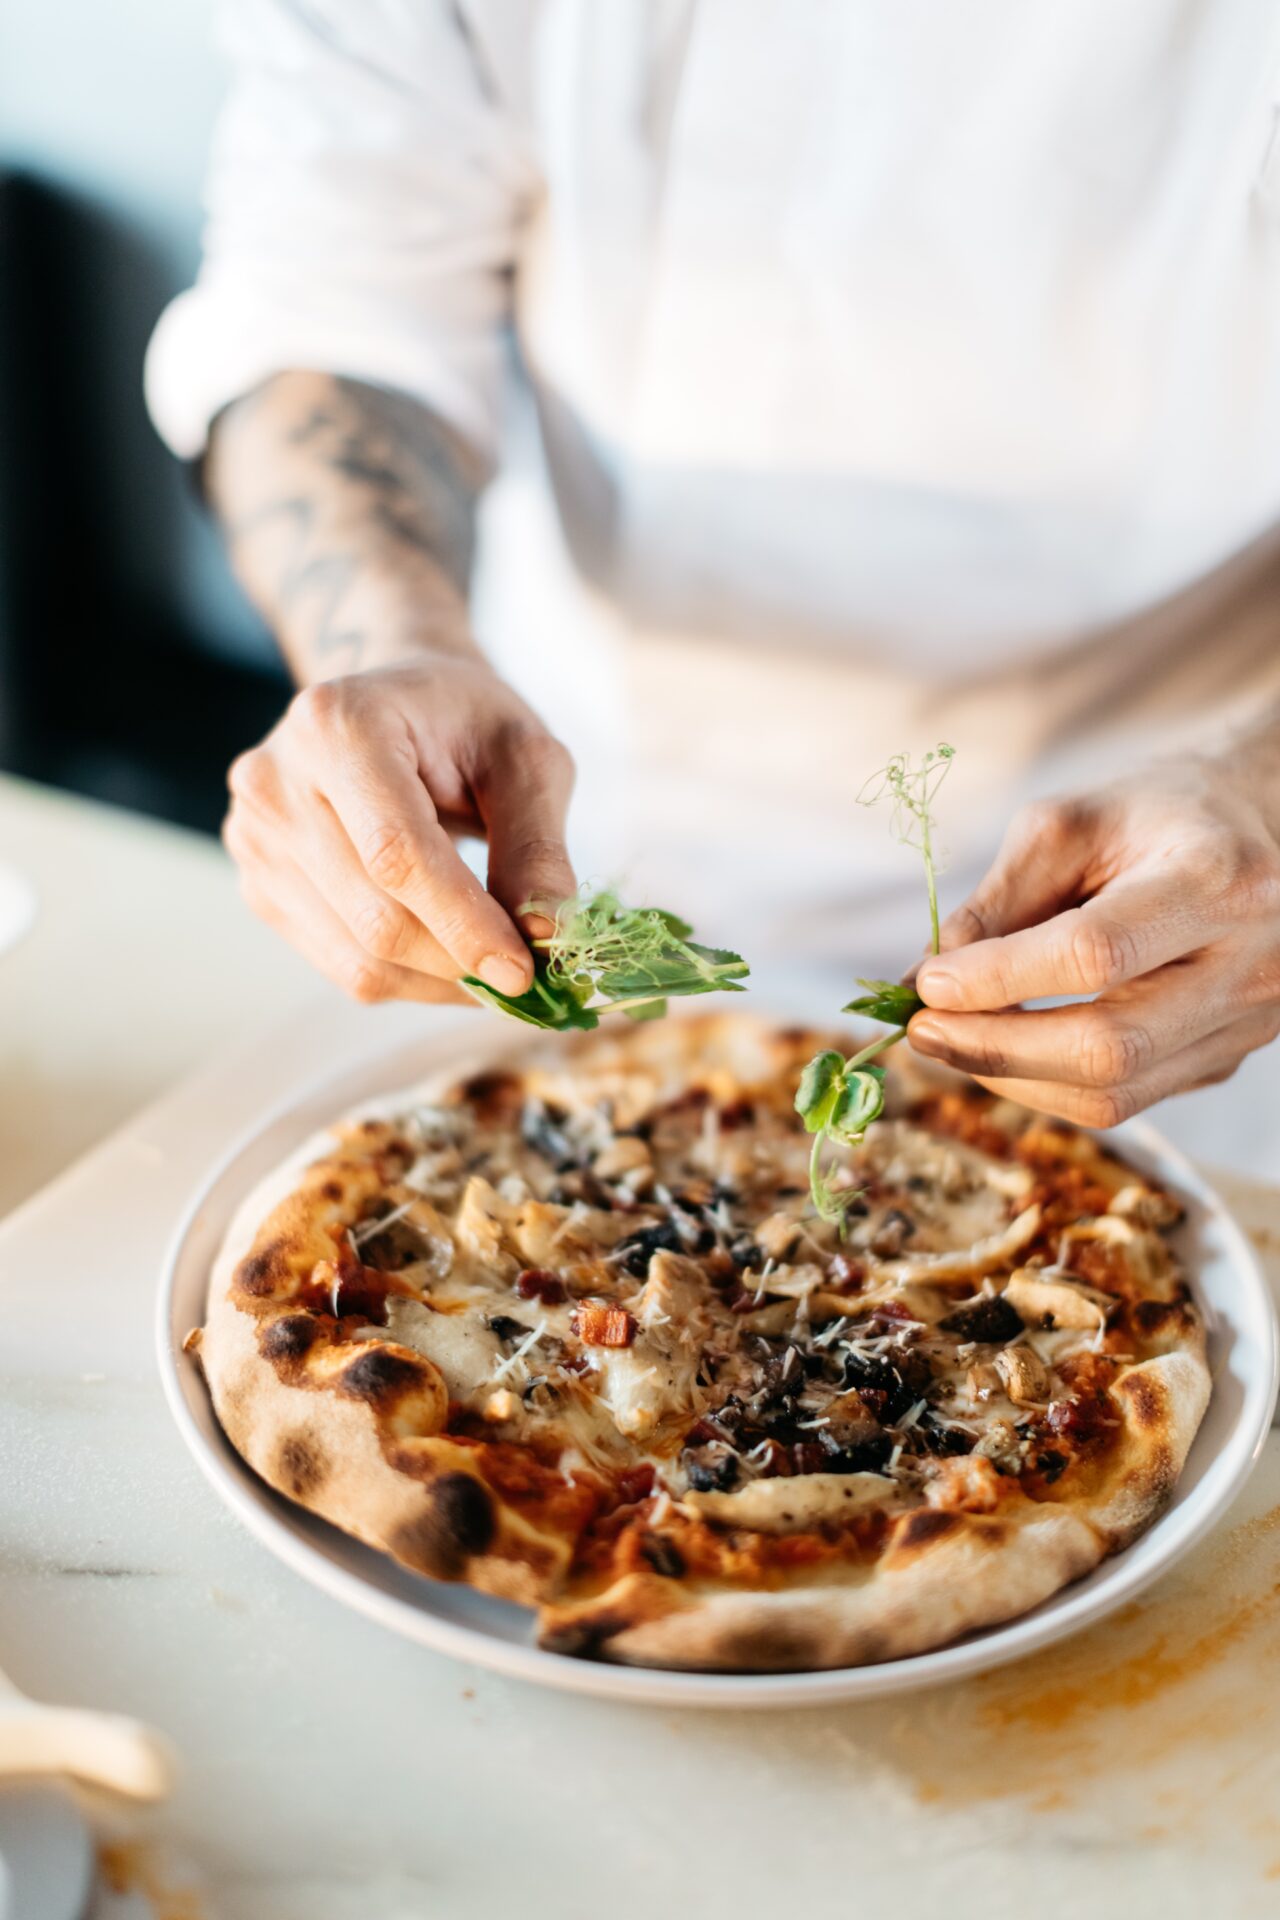 Bilden visar en person som dekorerar en pizza. Pizzaugn, elektrisk variant är ett väldigt bra val för att snabbt komma igång med pizzautbudet i din restaurang.